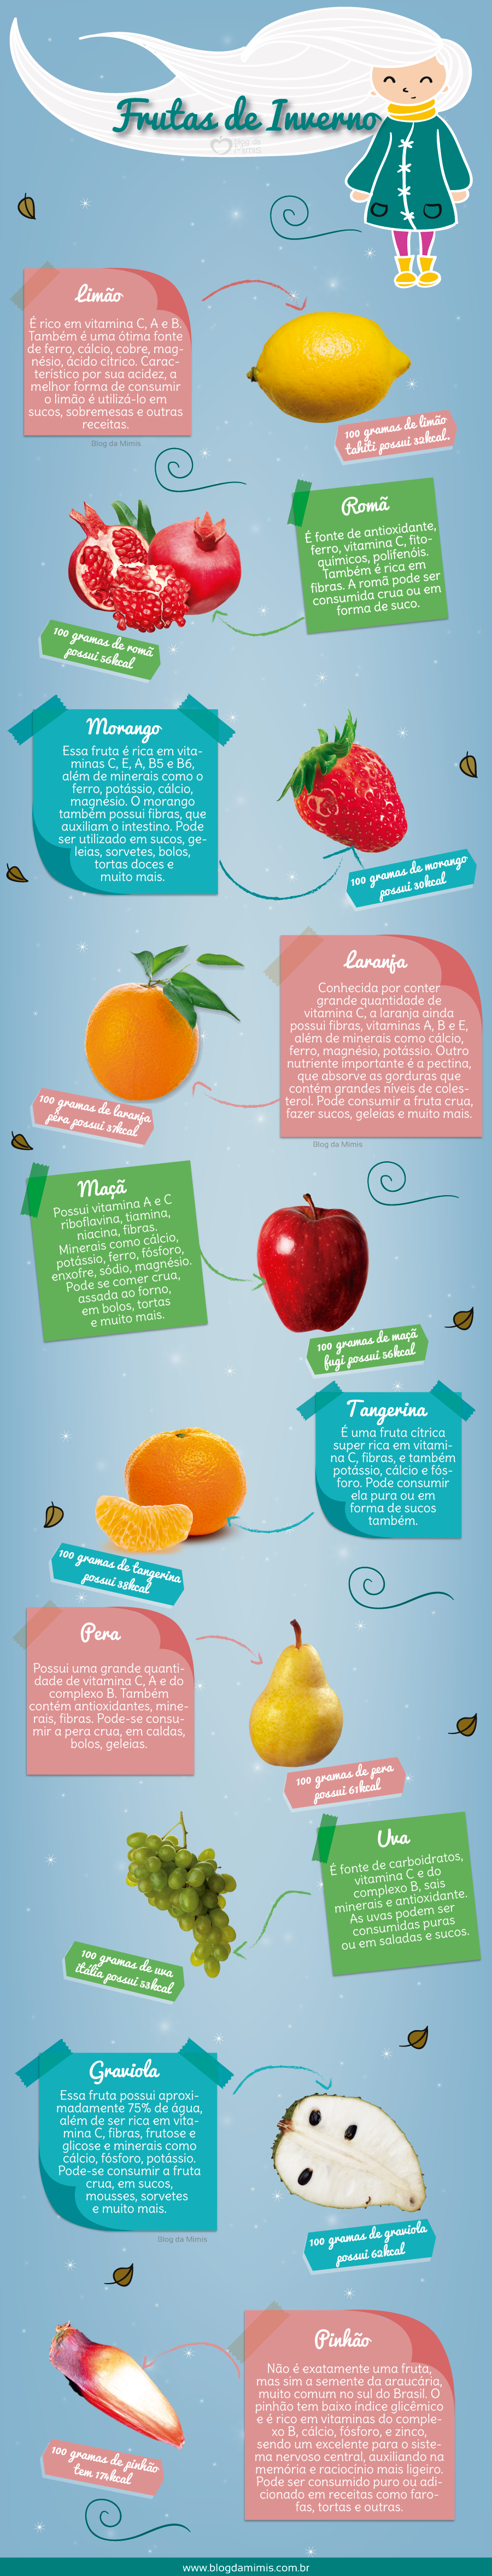 10-super-frutas-de-inverno-blog-da-mimis-michelle-franzoni-post